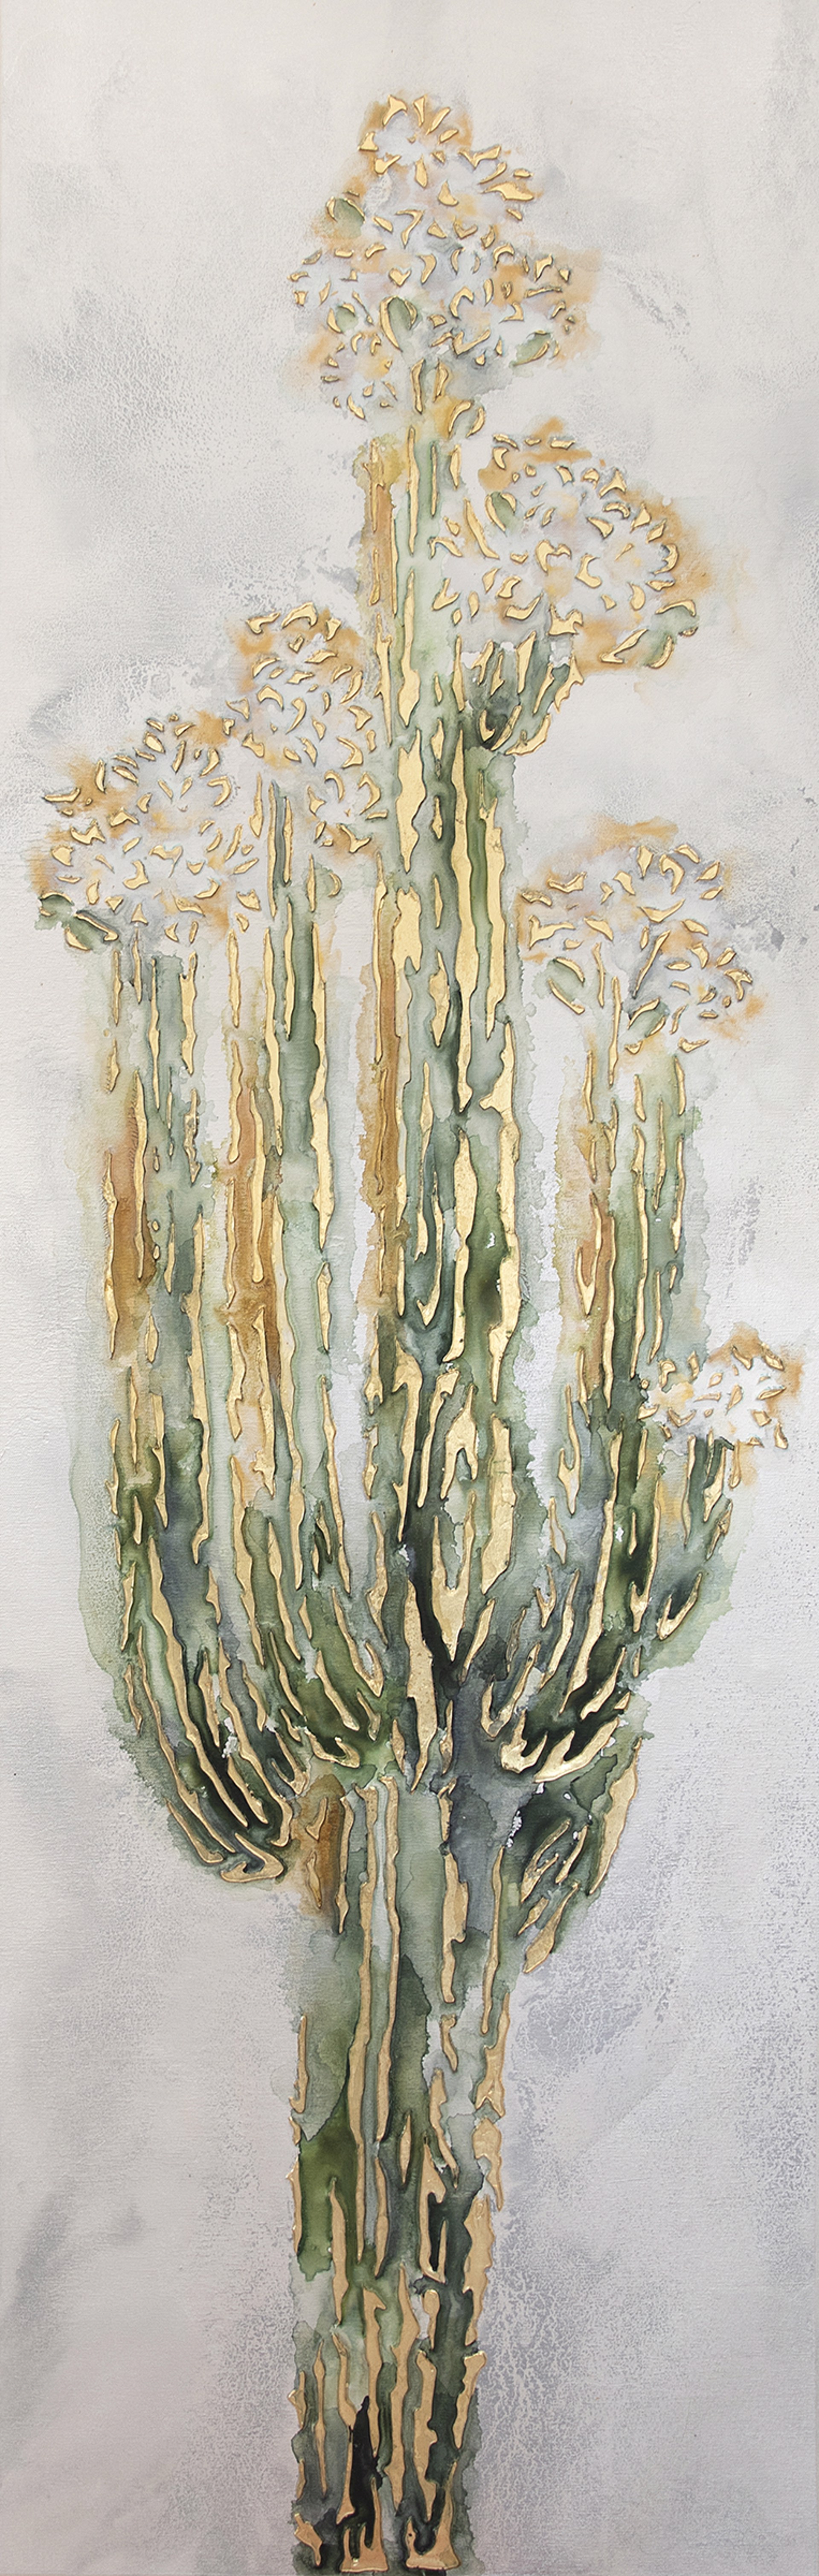 Blooming Saguaro by Leah Rei